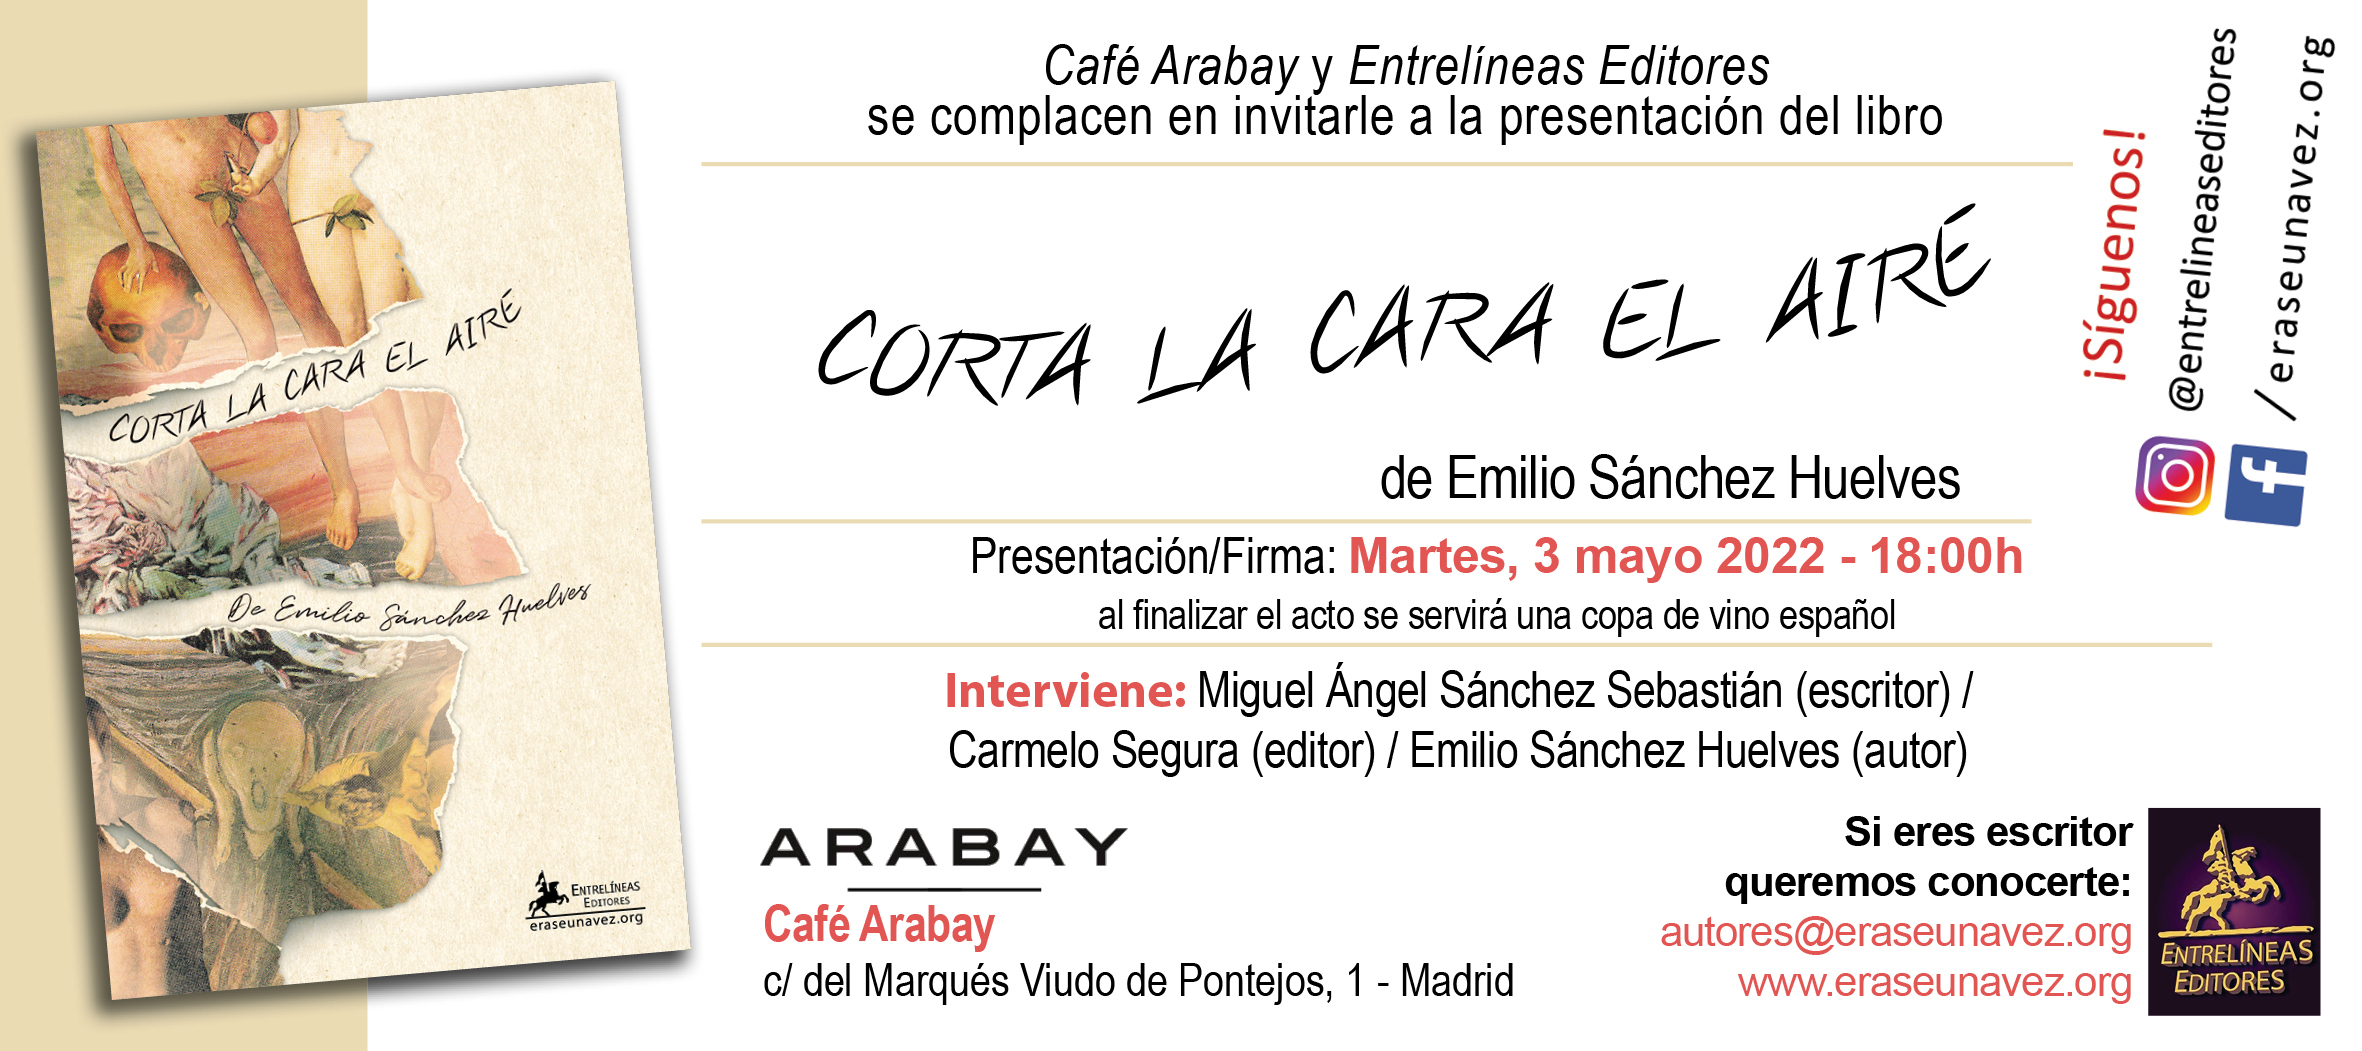 2022-05-03_Corta_la_cara_el_aire_-_invitacion